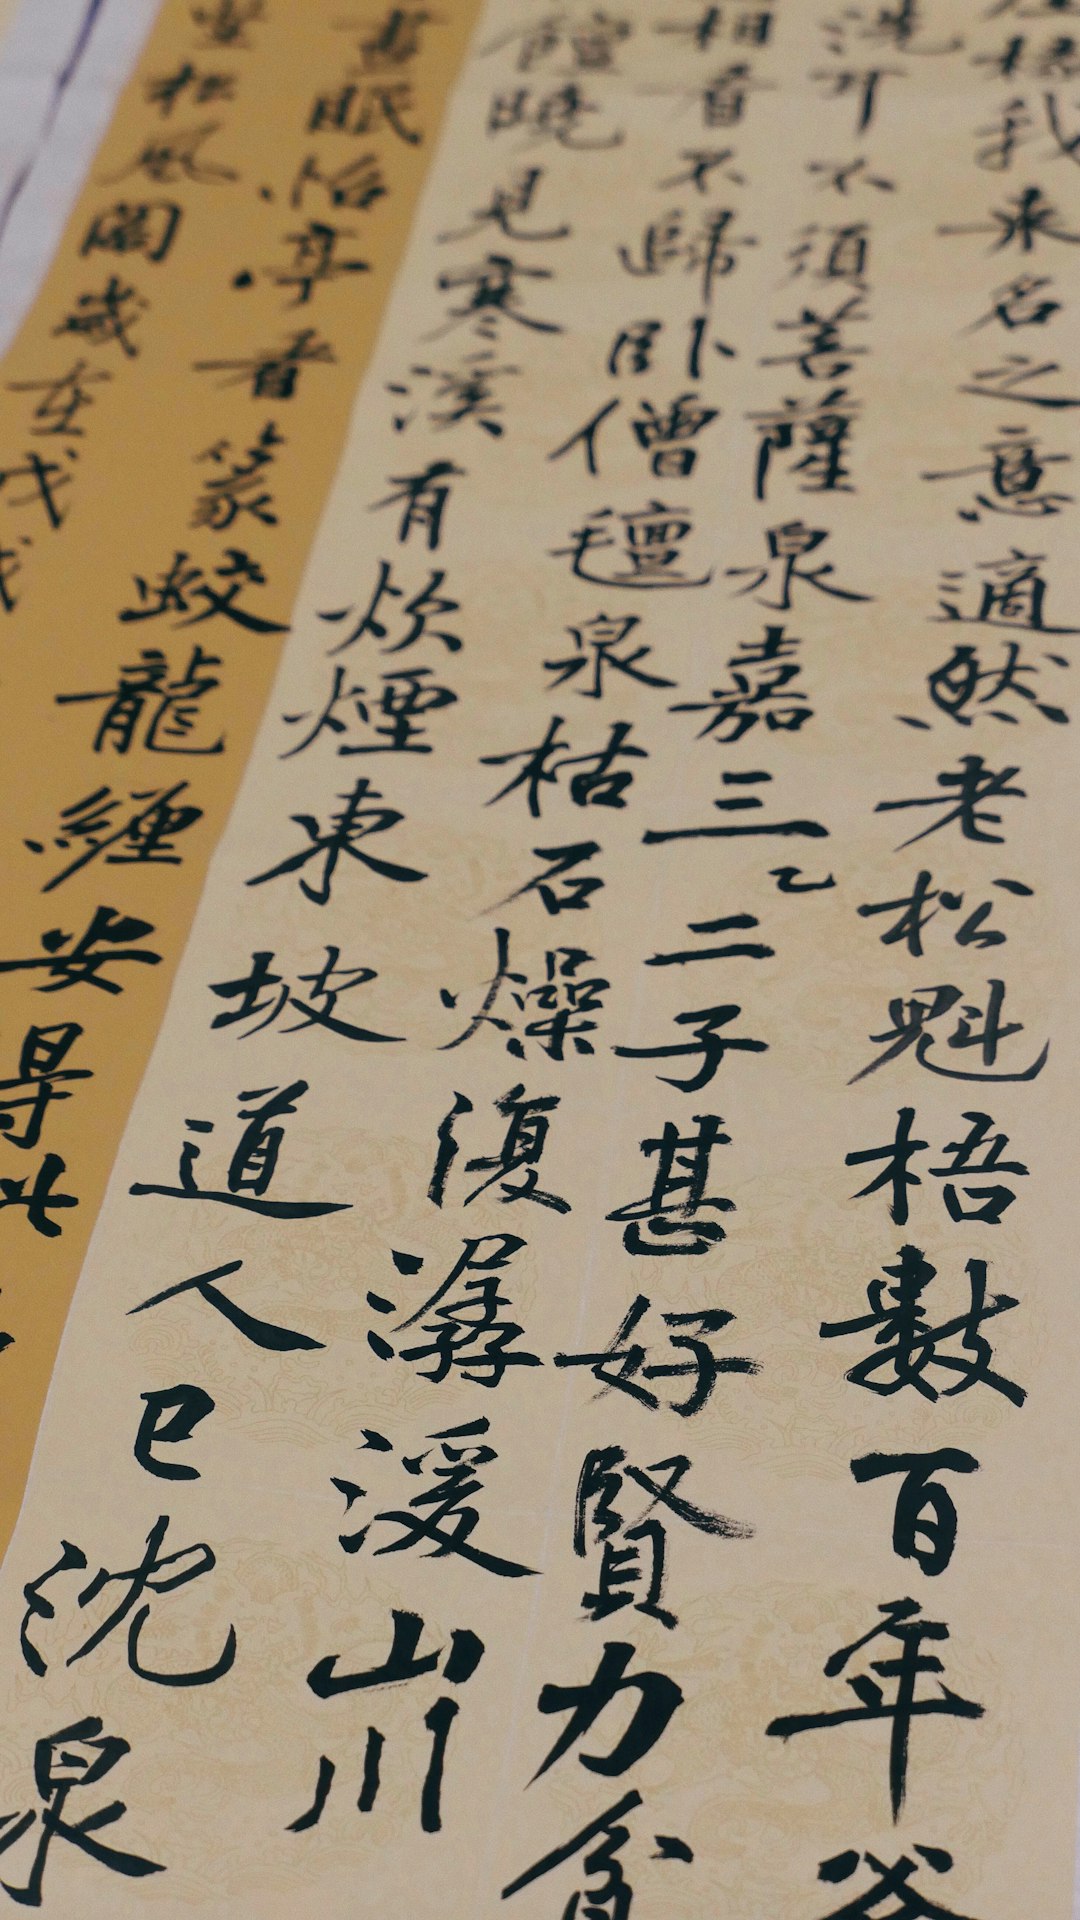 Kanji text